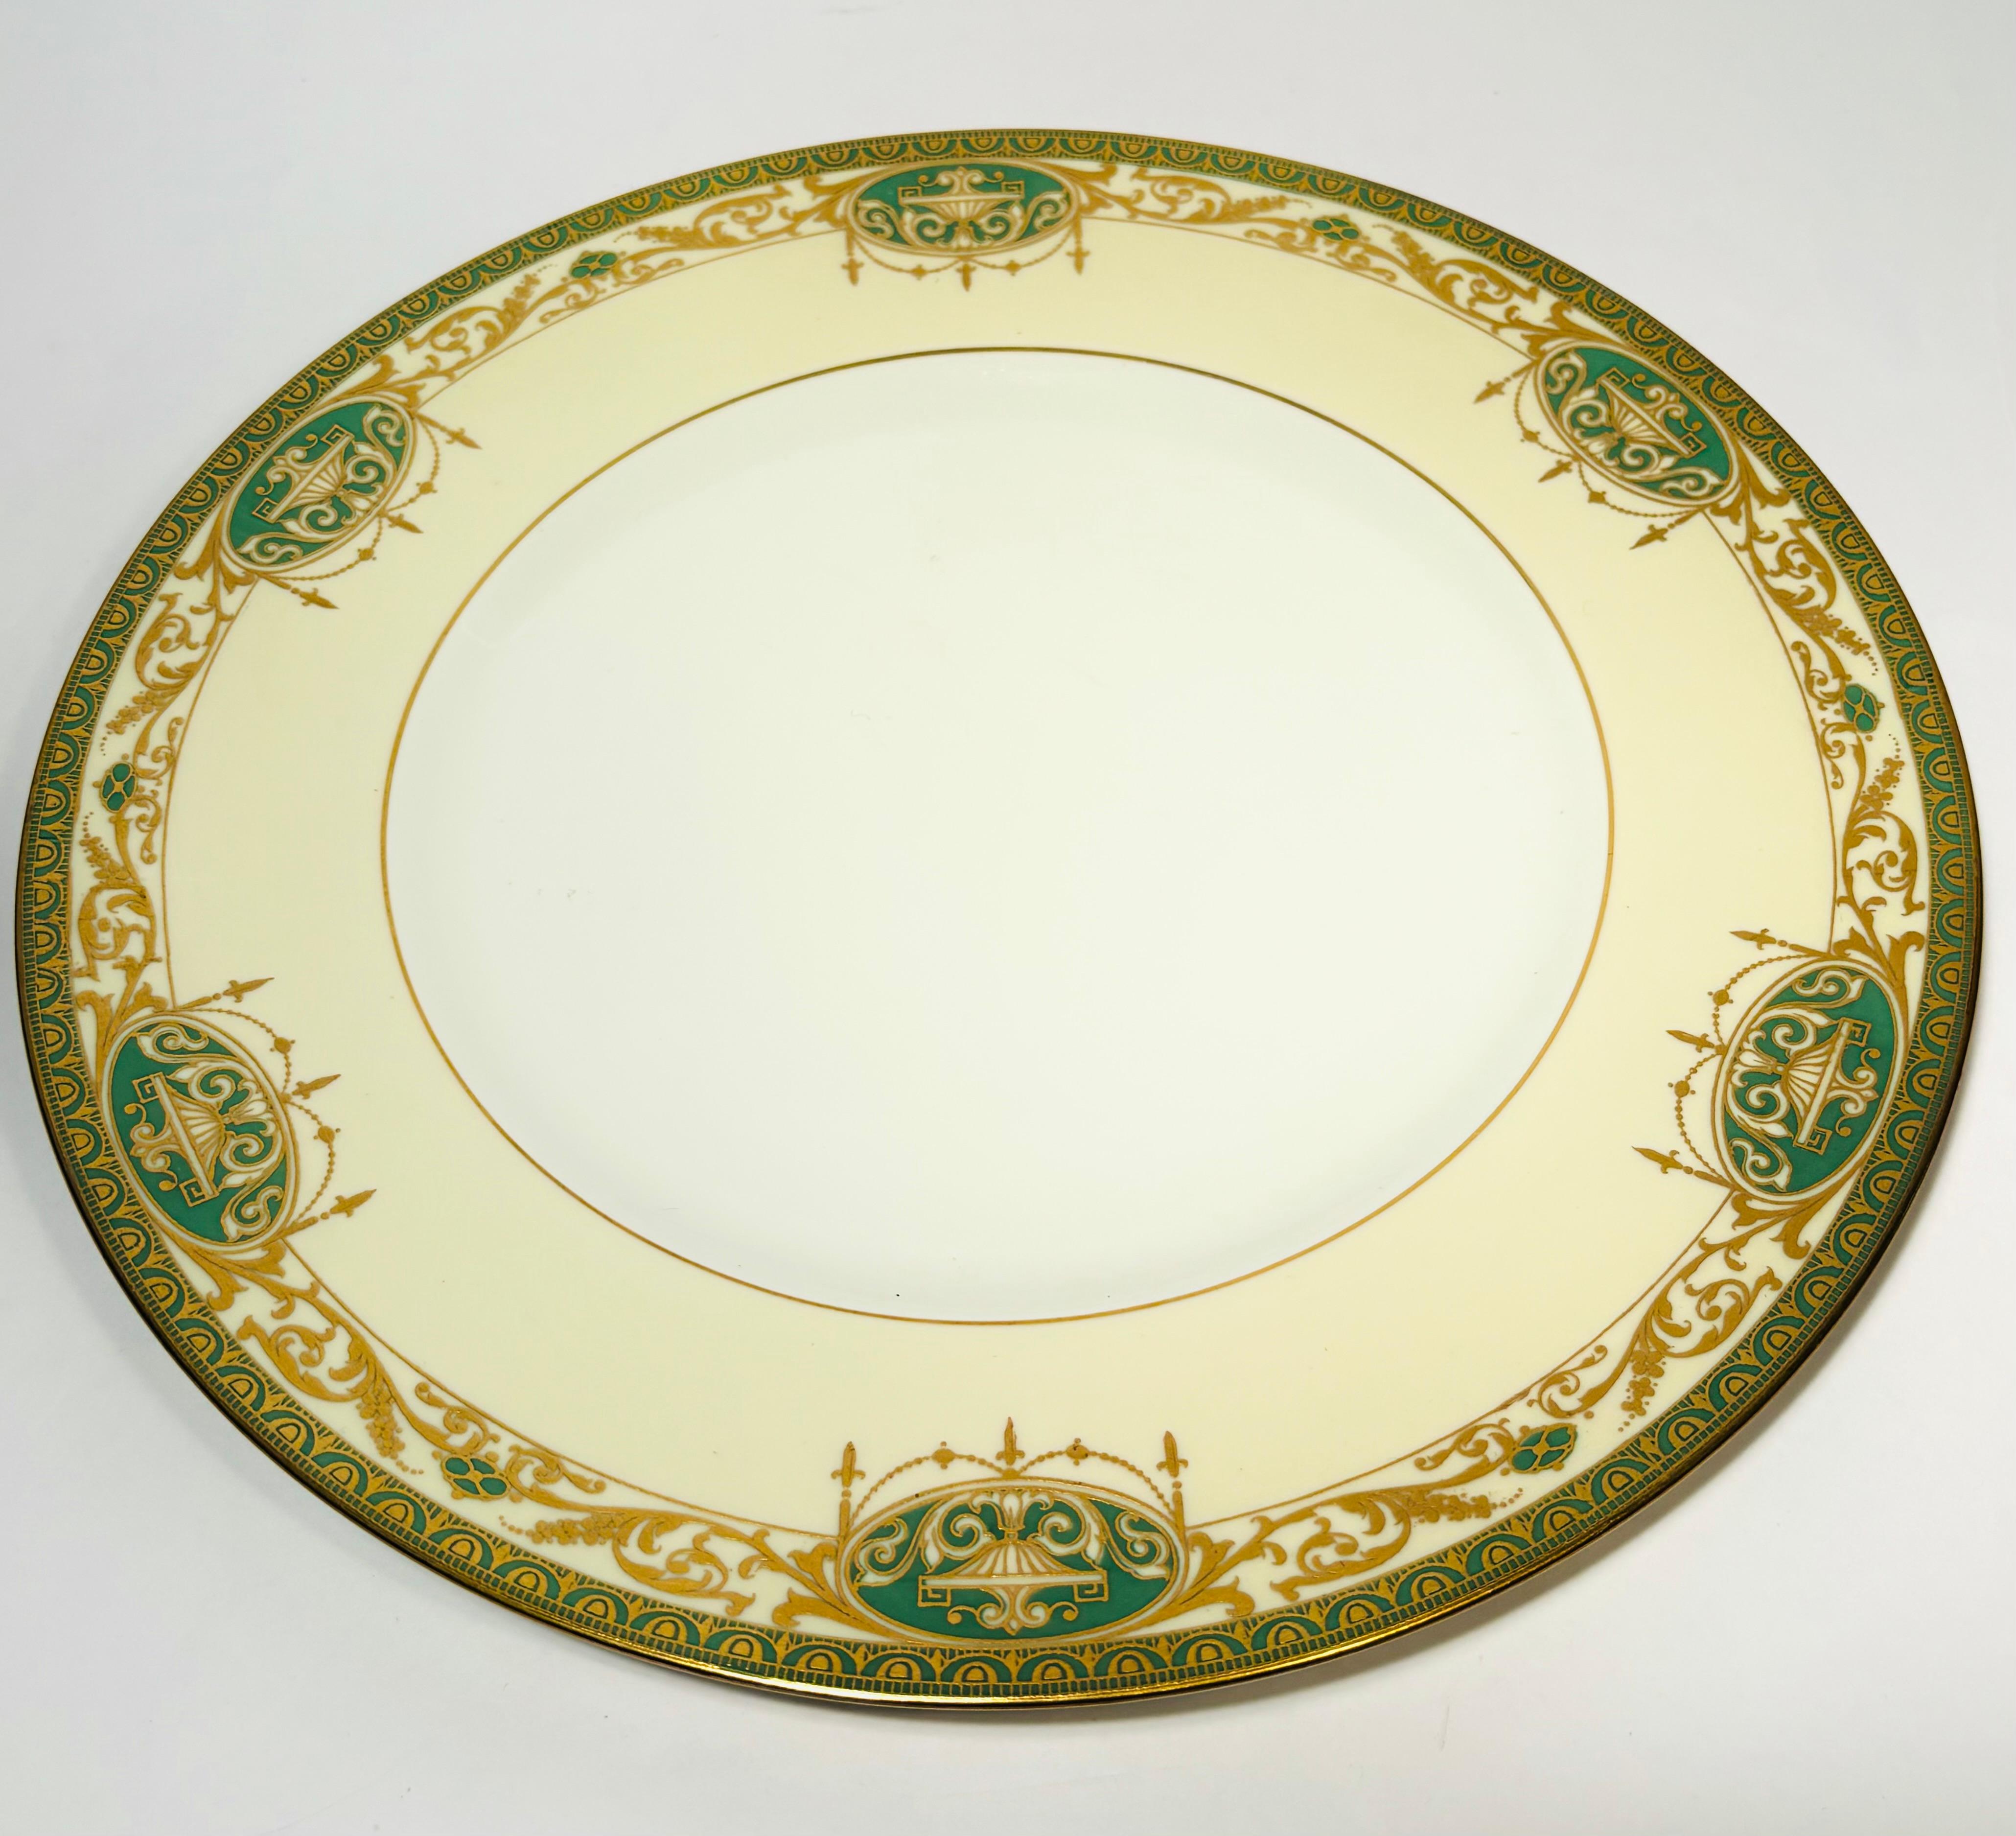 Britannique 12 assiettes plates anglaises anciennes vertes et dorées en relief, motif néoclassique en vente